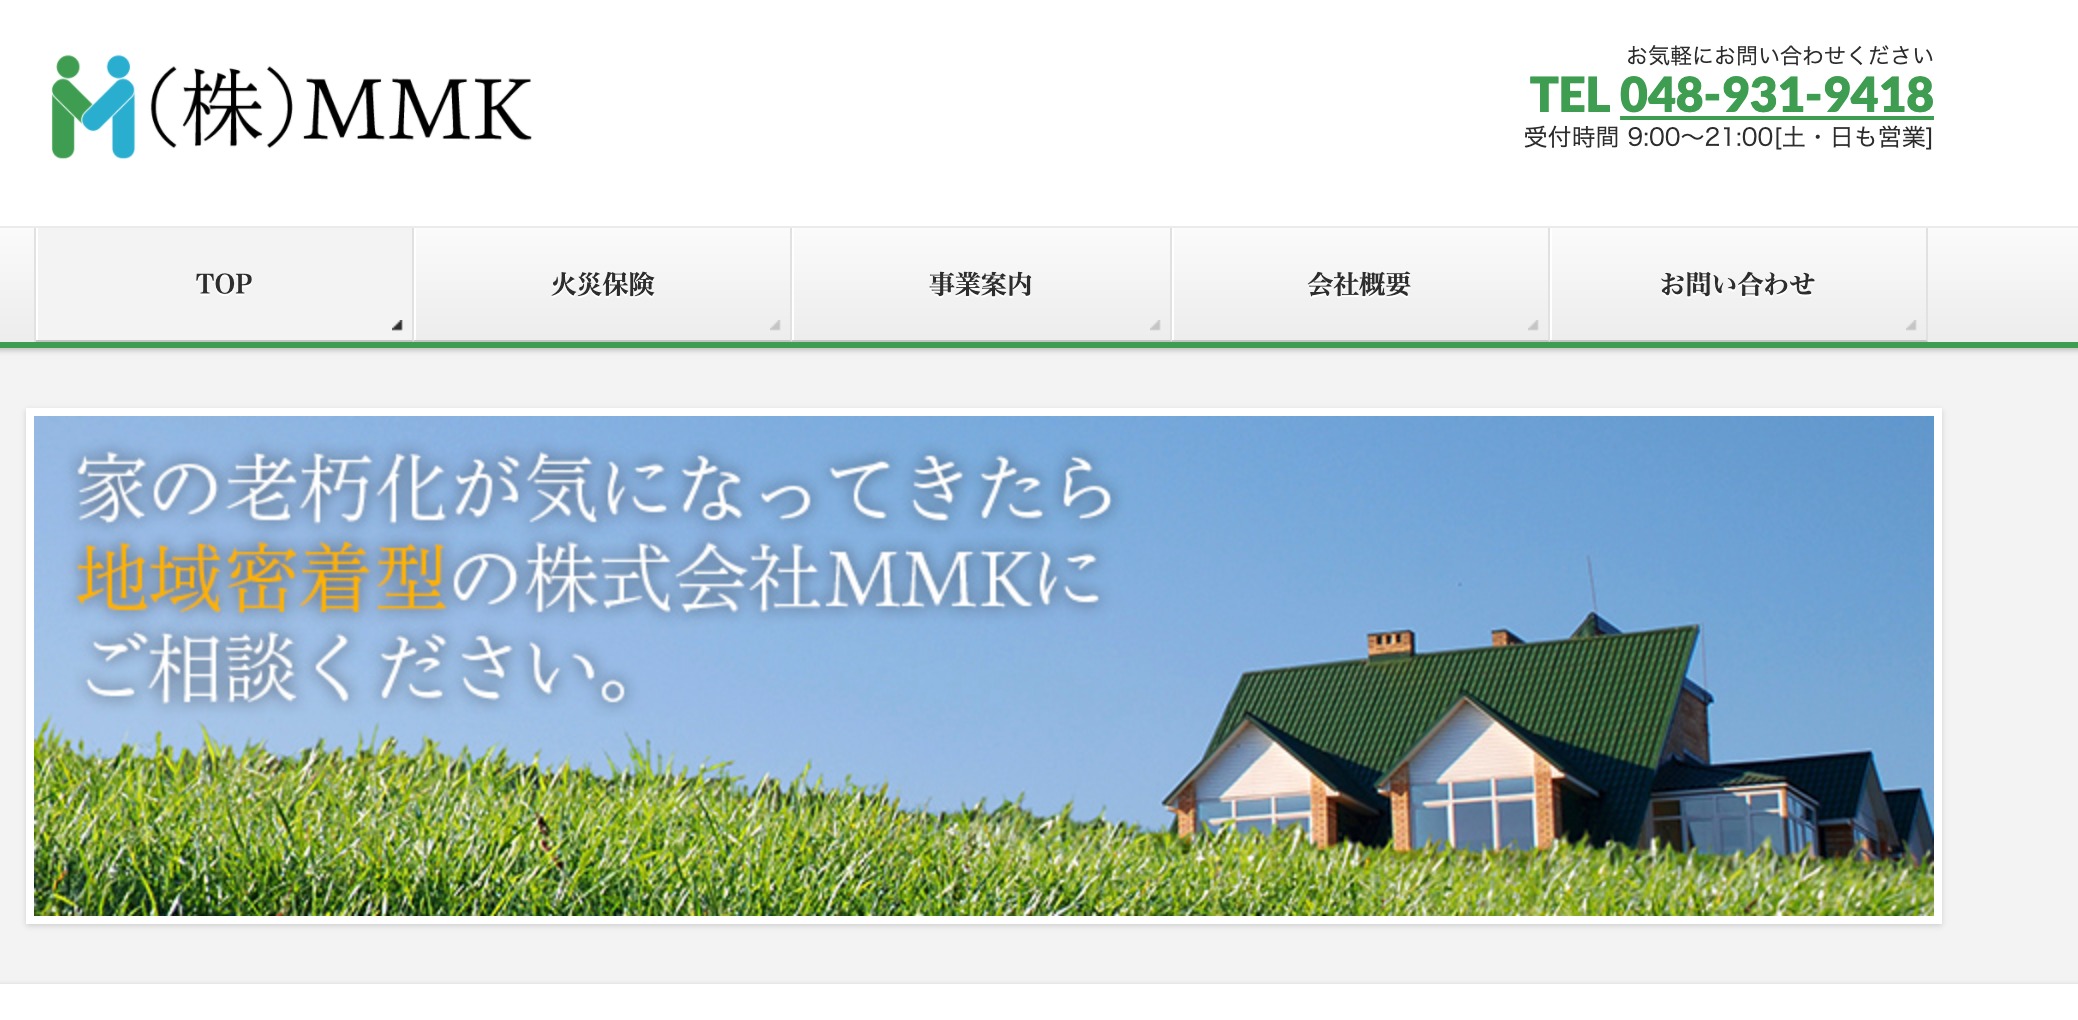 埼玉の外壁塗装ランキング1位:株式会社MMK